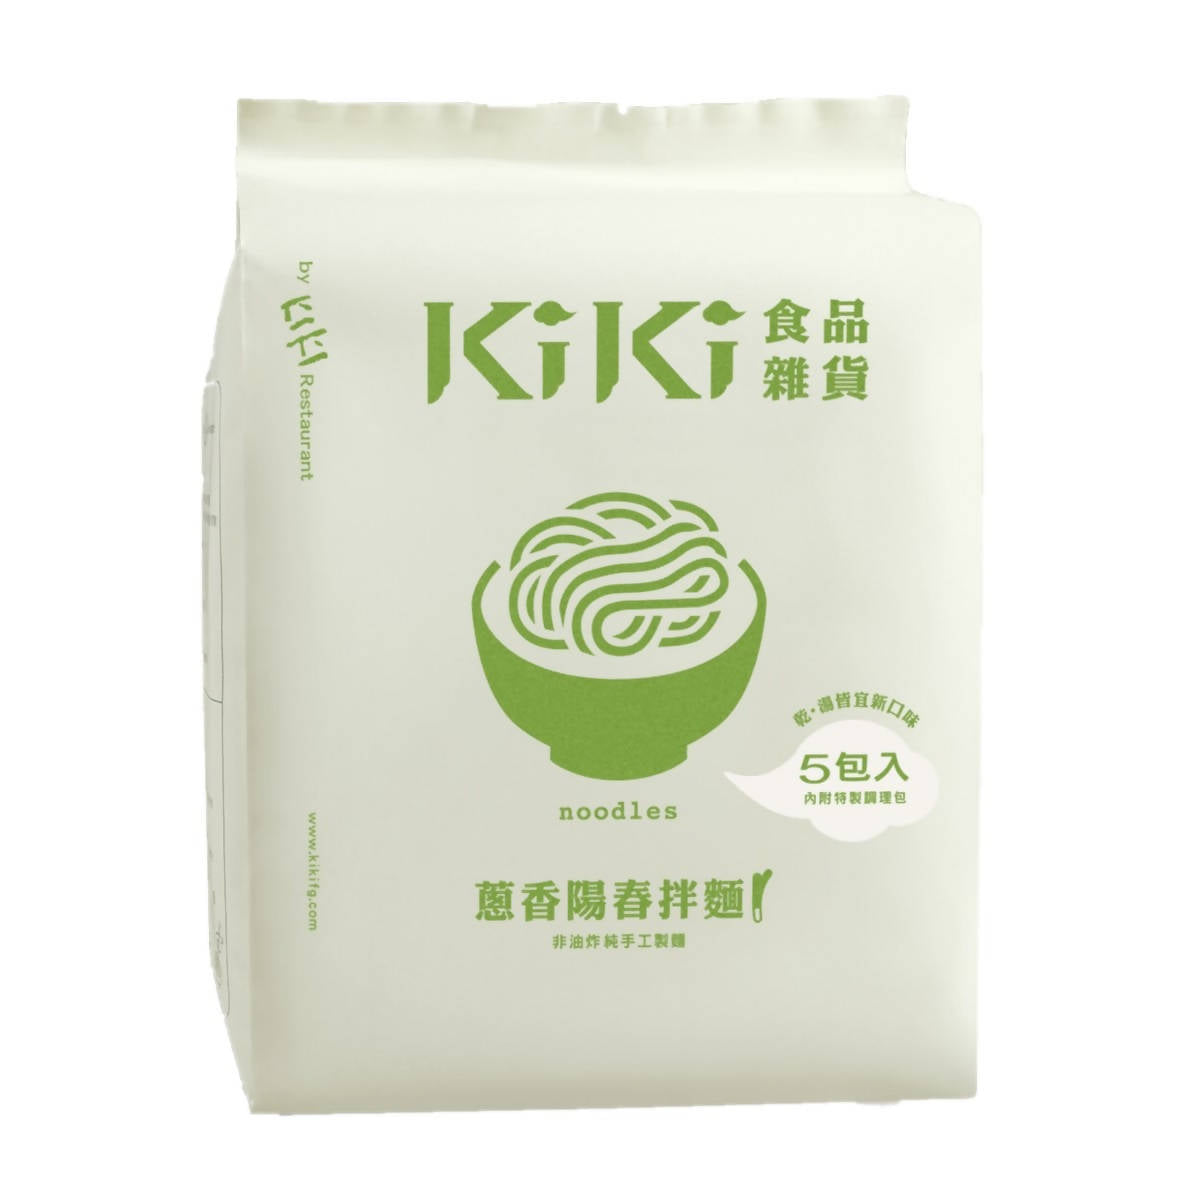 台灣直郵 【KIKI食品雜貨】KIKI FINE GOODS 蔥香陽春麵 500g